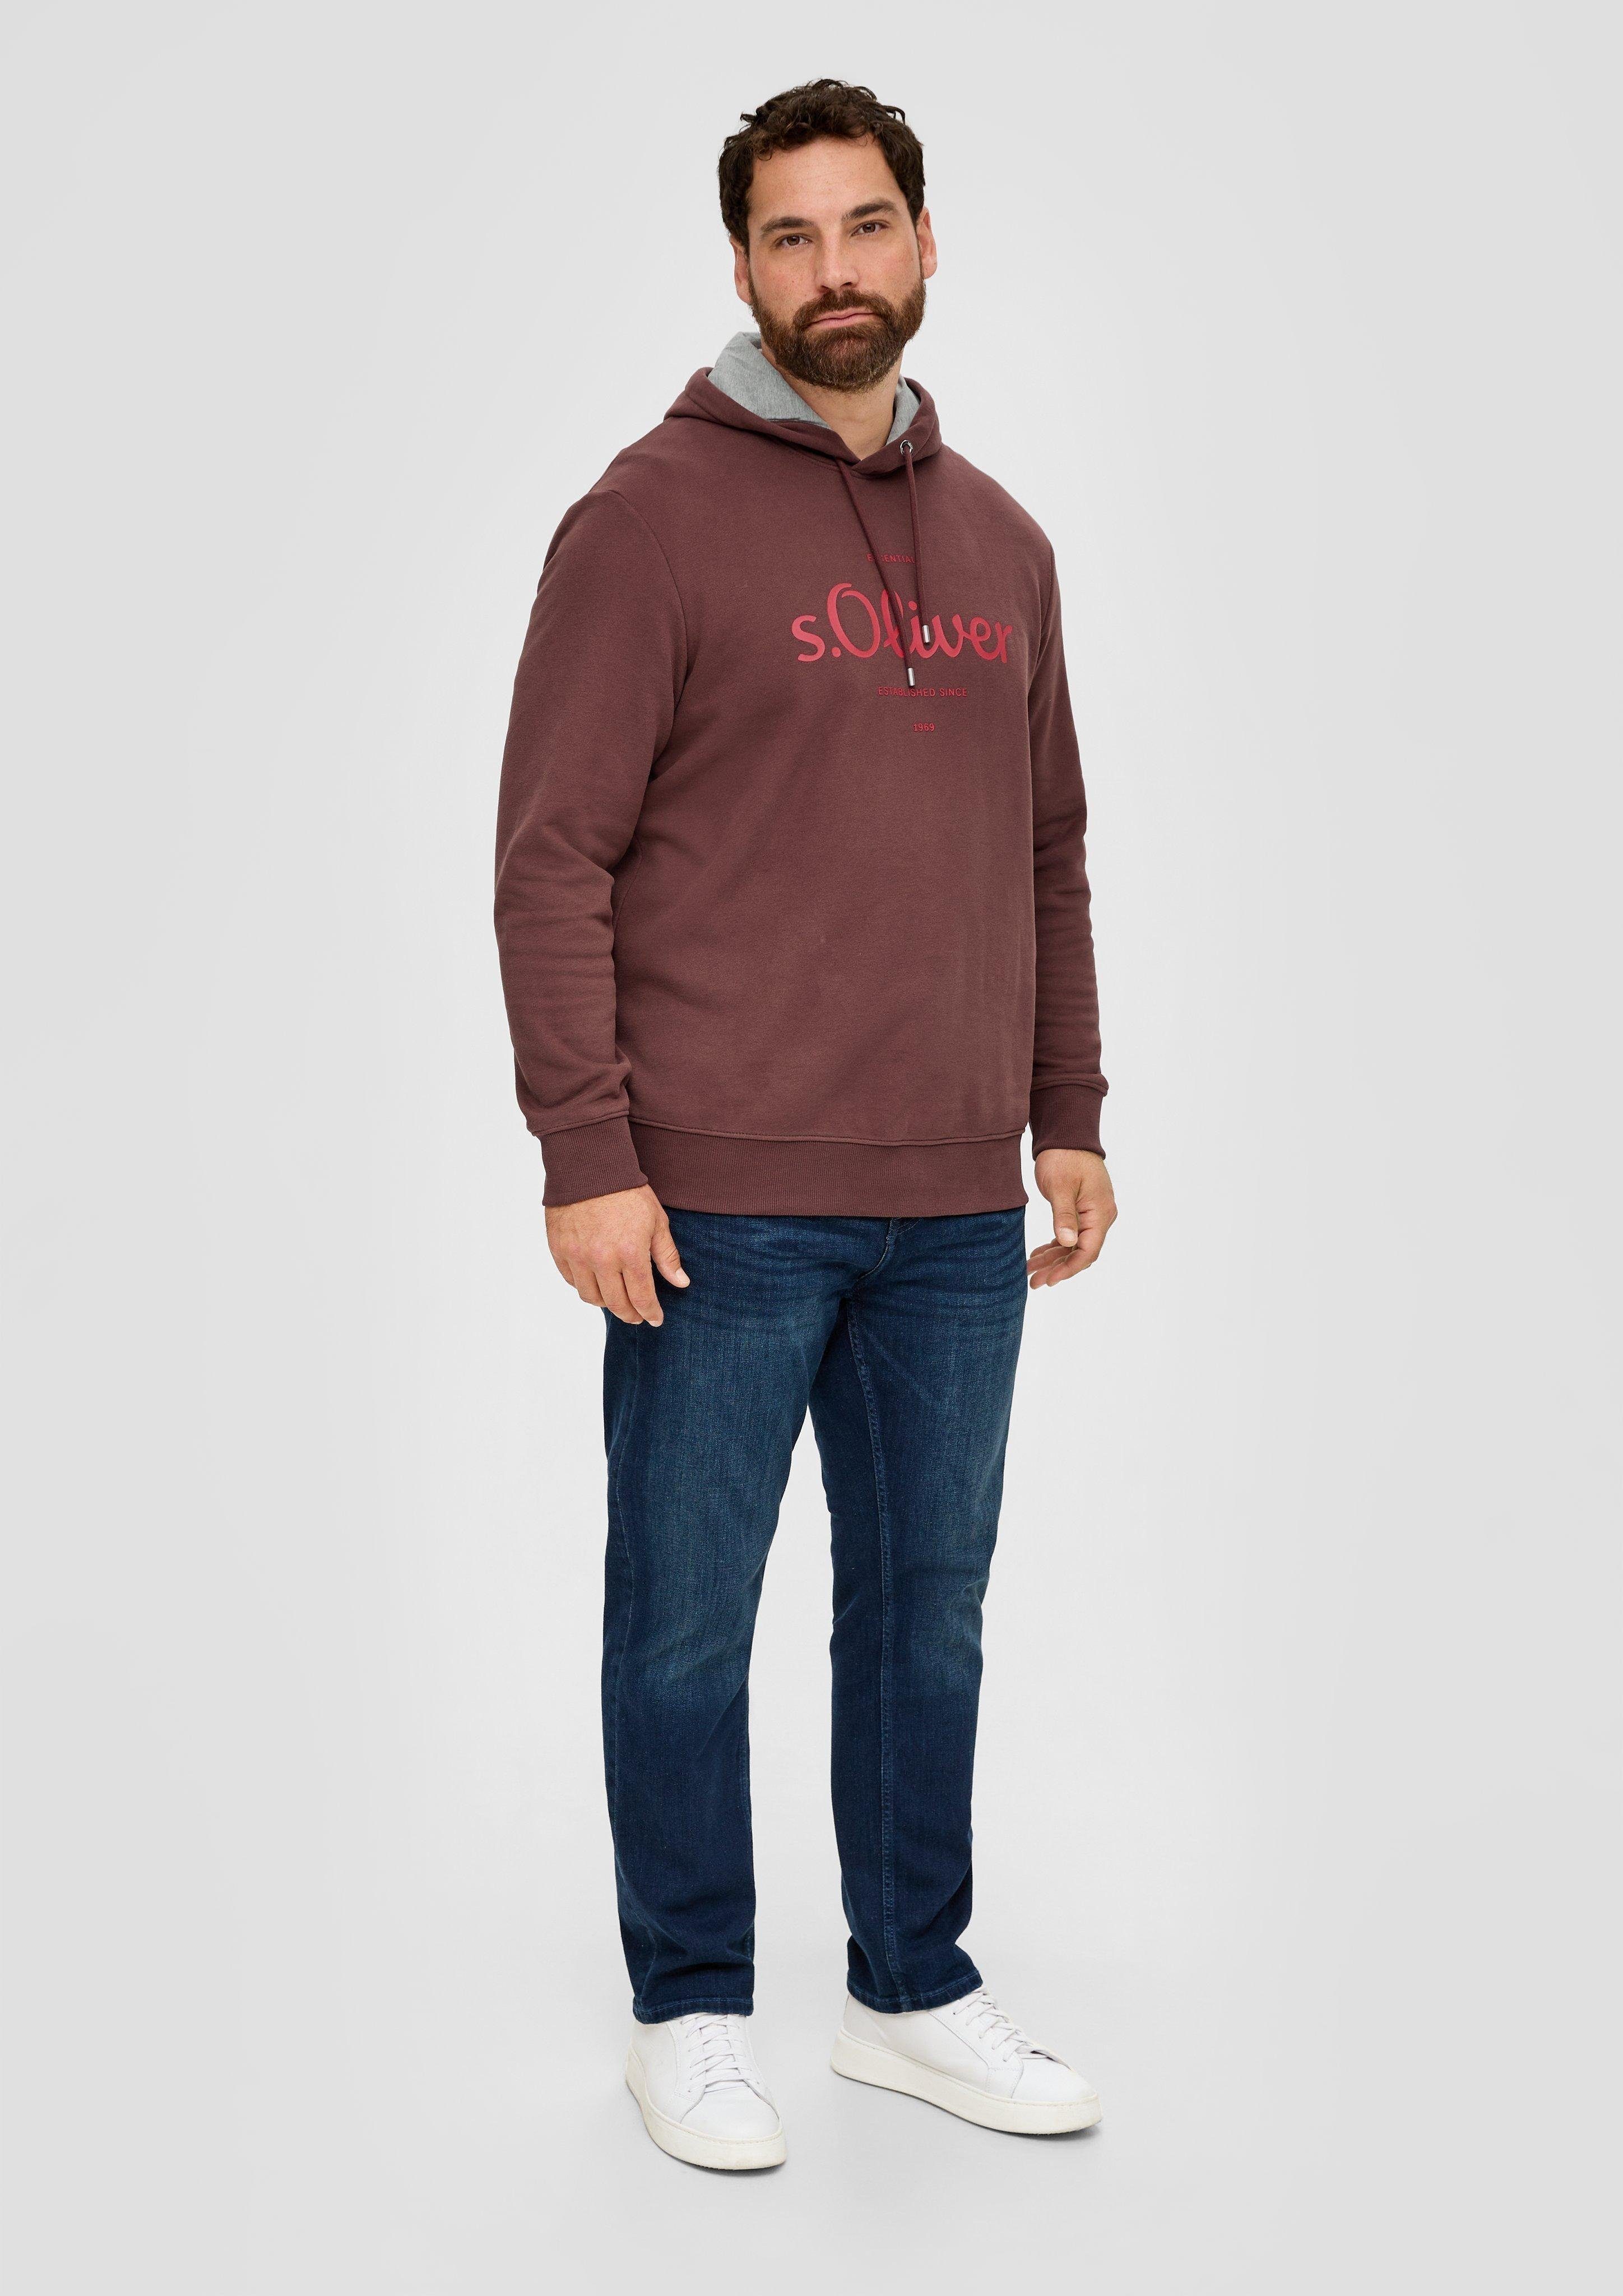 Sweat-Qualität Sweatshirt lila s.Oliver in Logo-Hoodie